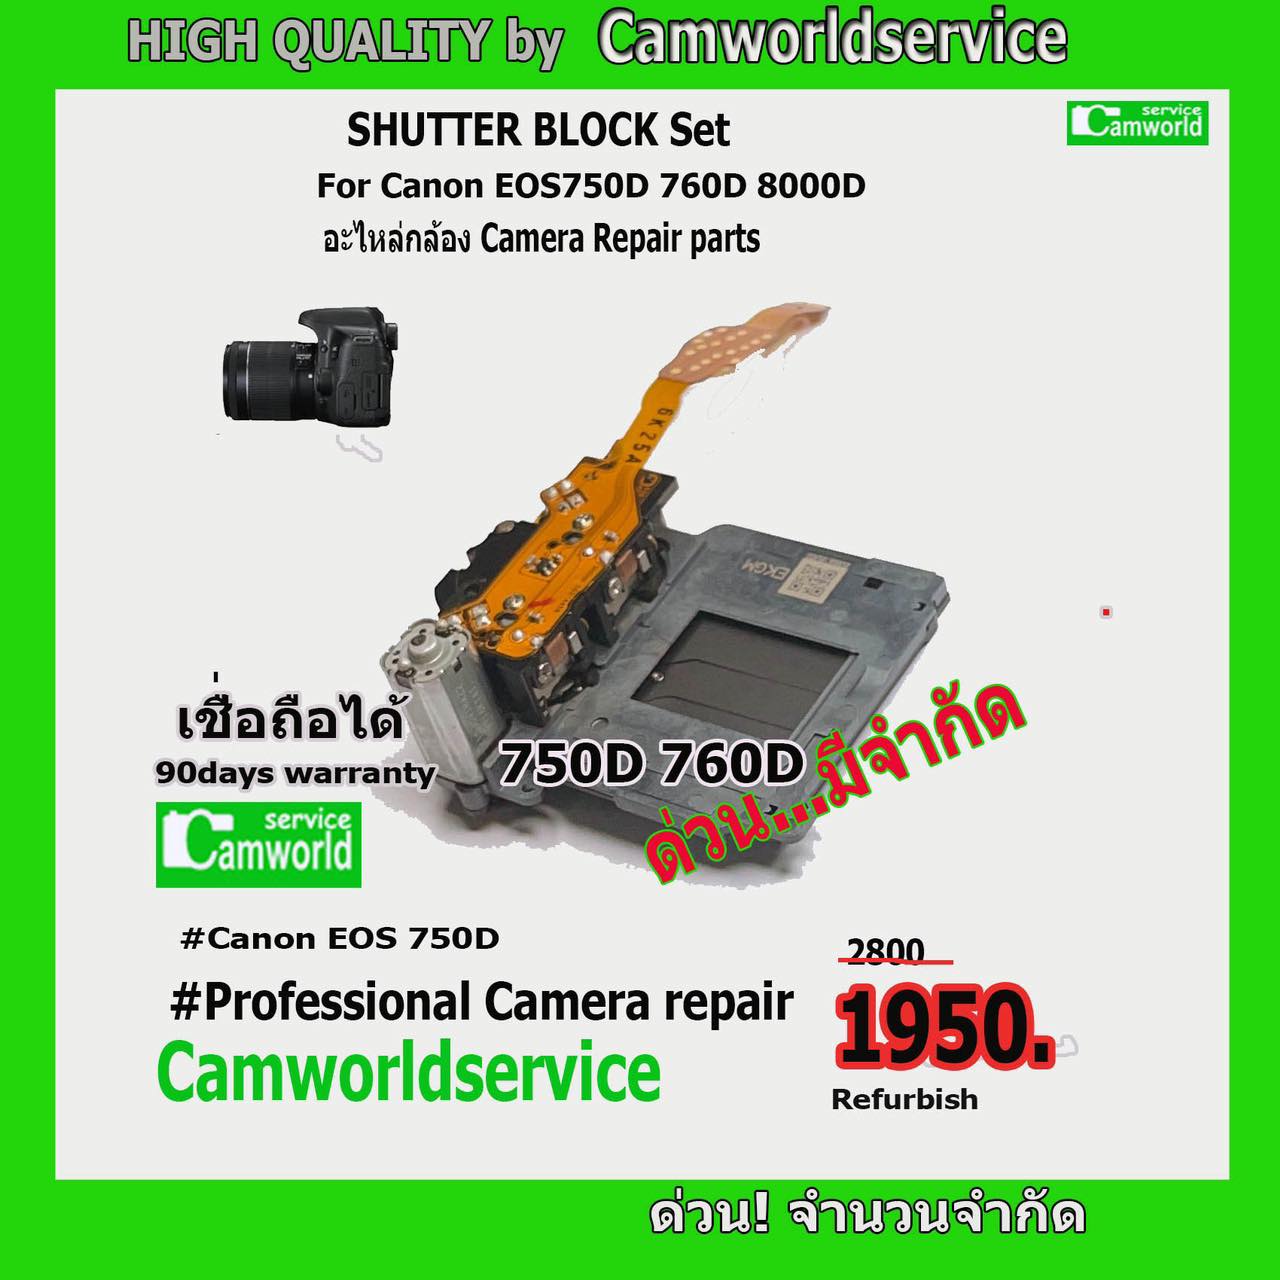 ขายอะไหล่กล้อง Shutter Block Set for Canon EOS 750D 760D 800D อะไหล่สินค้าคุณภาพดี เชื่อถือได้...ด่วนมีจำนวนจำกัด!!